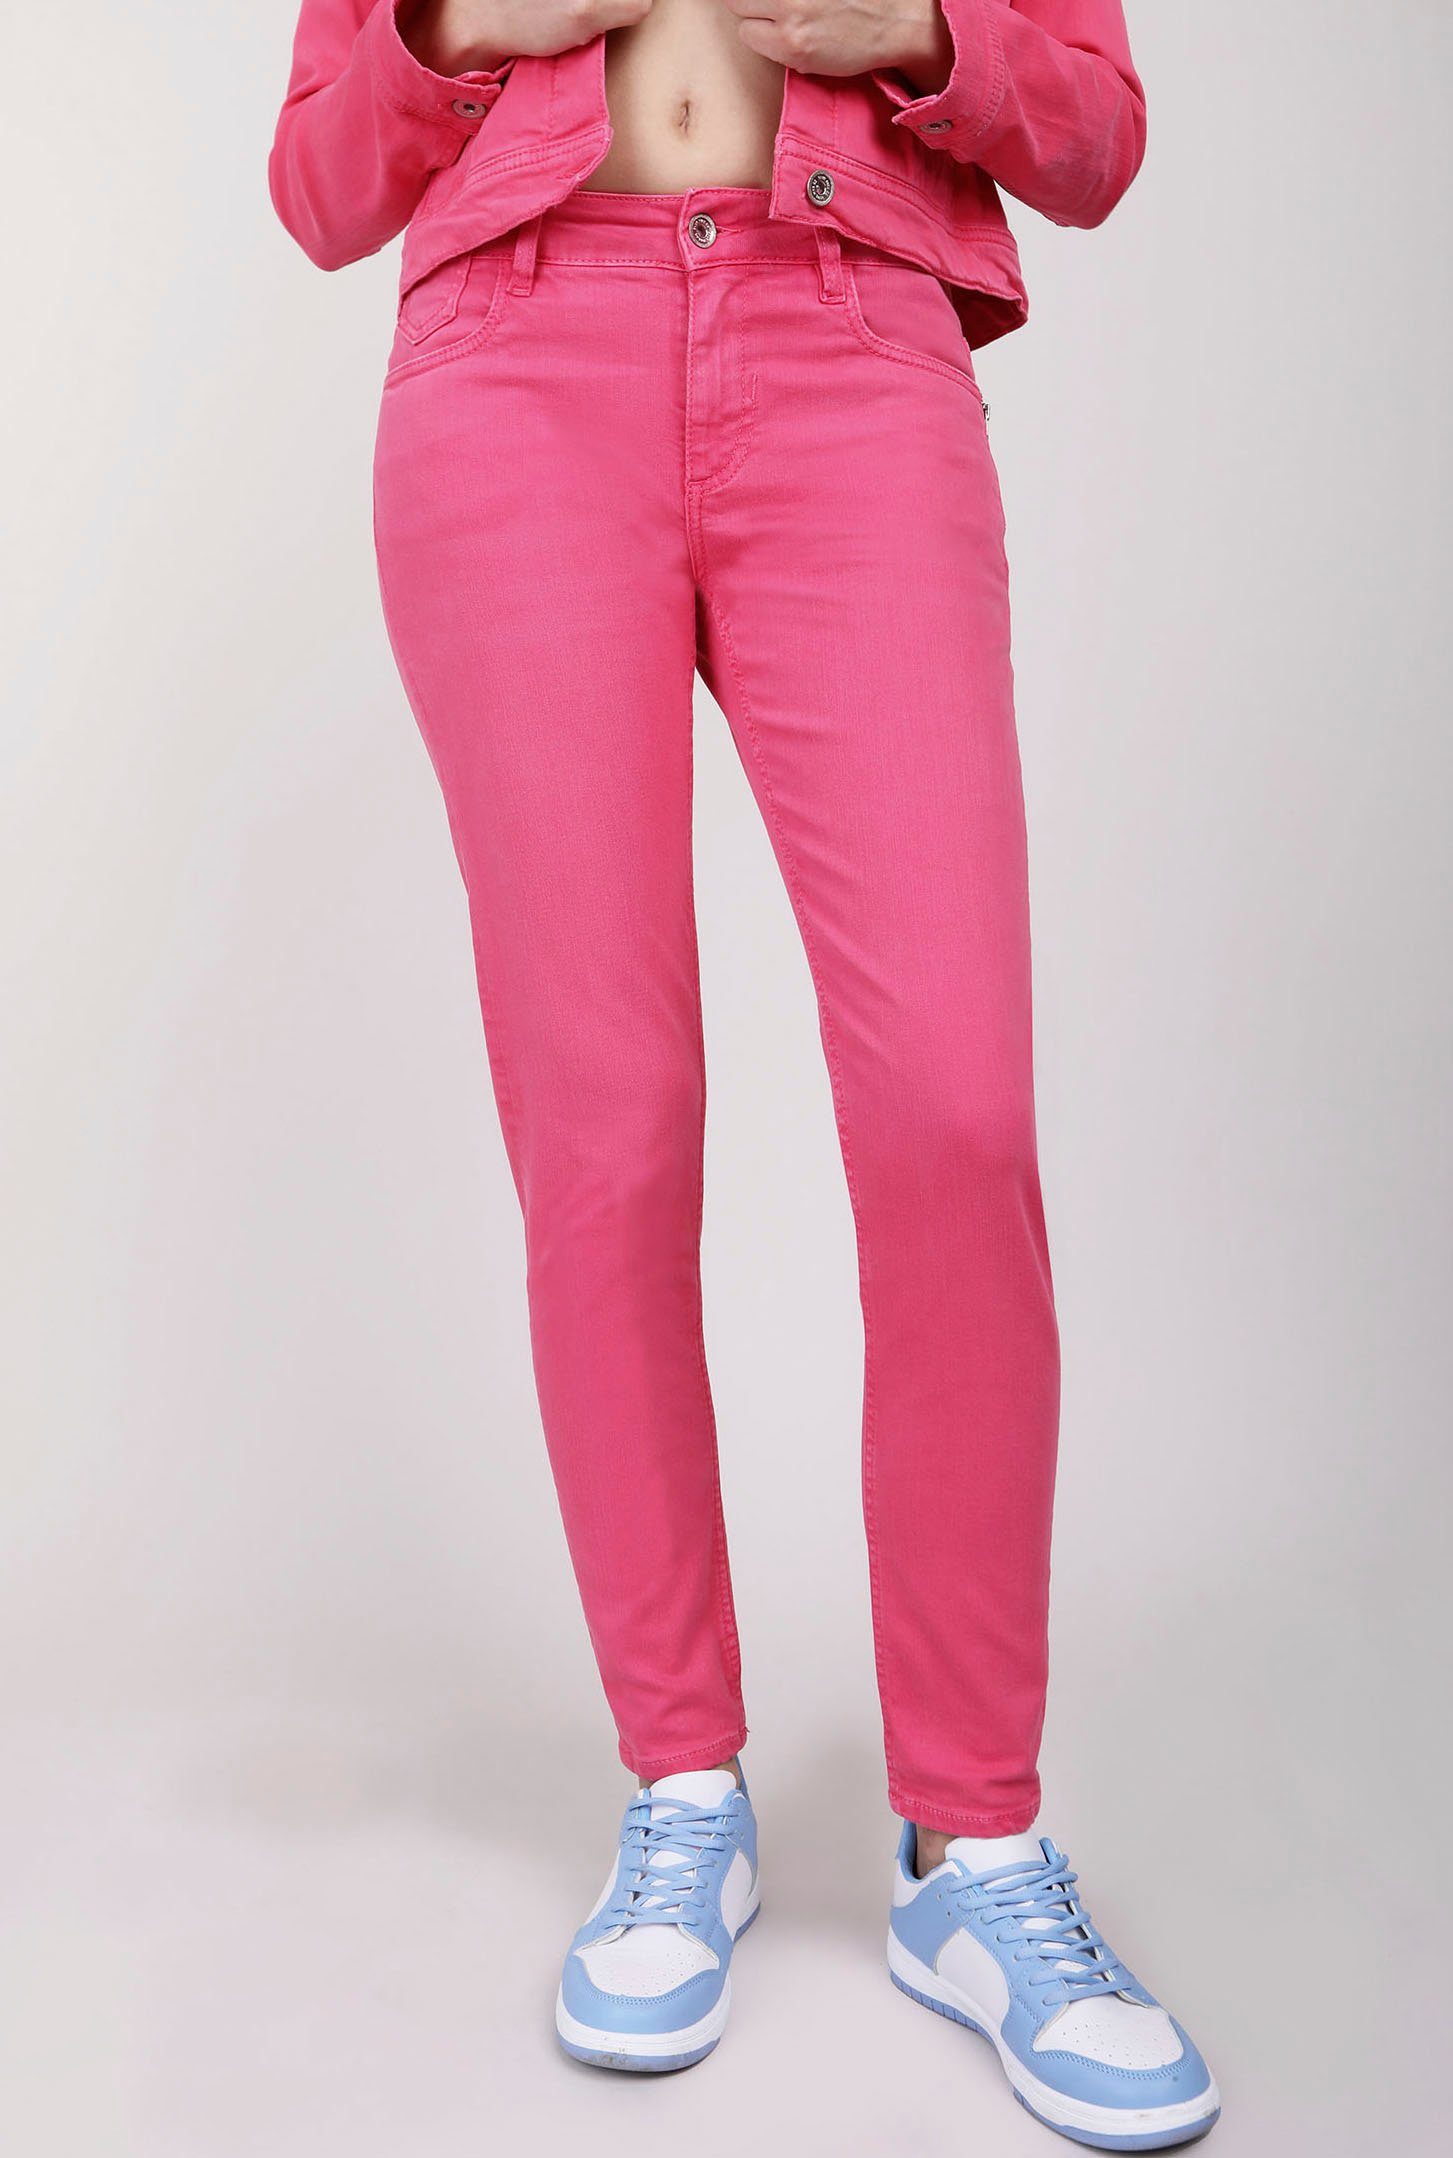 BLUE FIRE Skinny-fit-Jeans CHLOE mit Reißverschluß-Detail an der Eingrifftasche pink